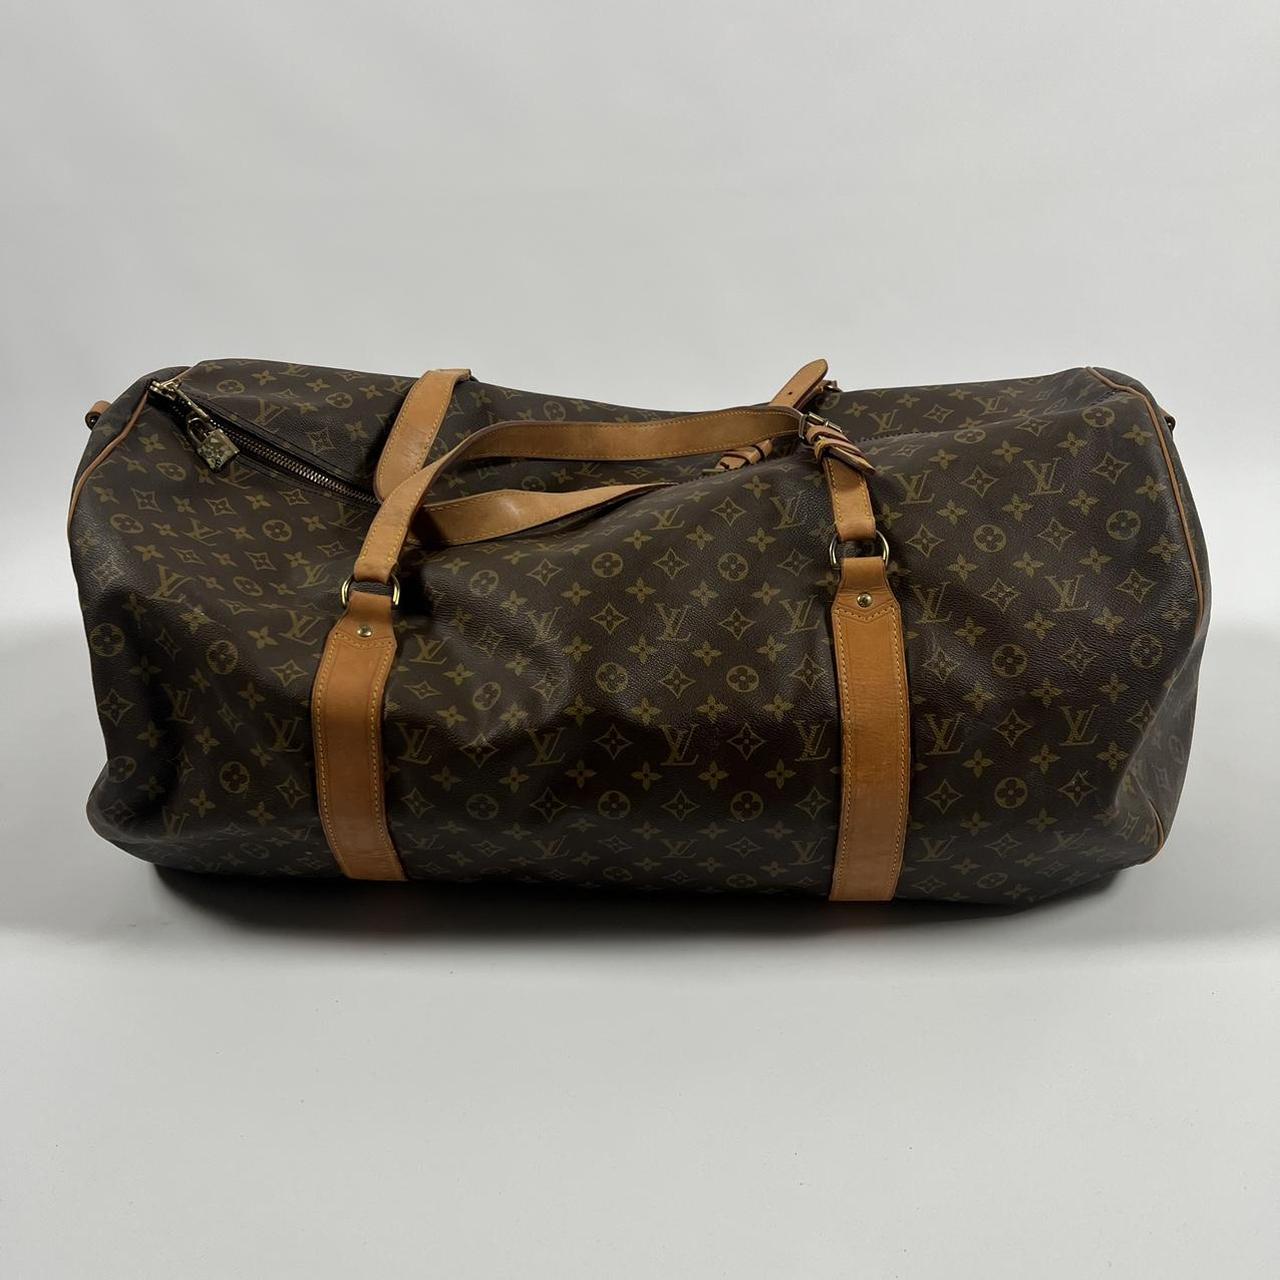 Louis Vuitton Keepall duffle bag Older, rarer - Depop